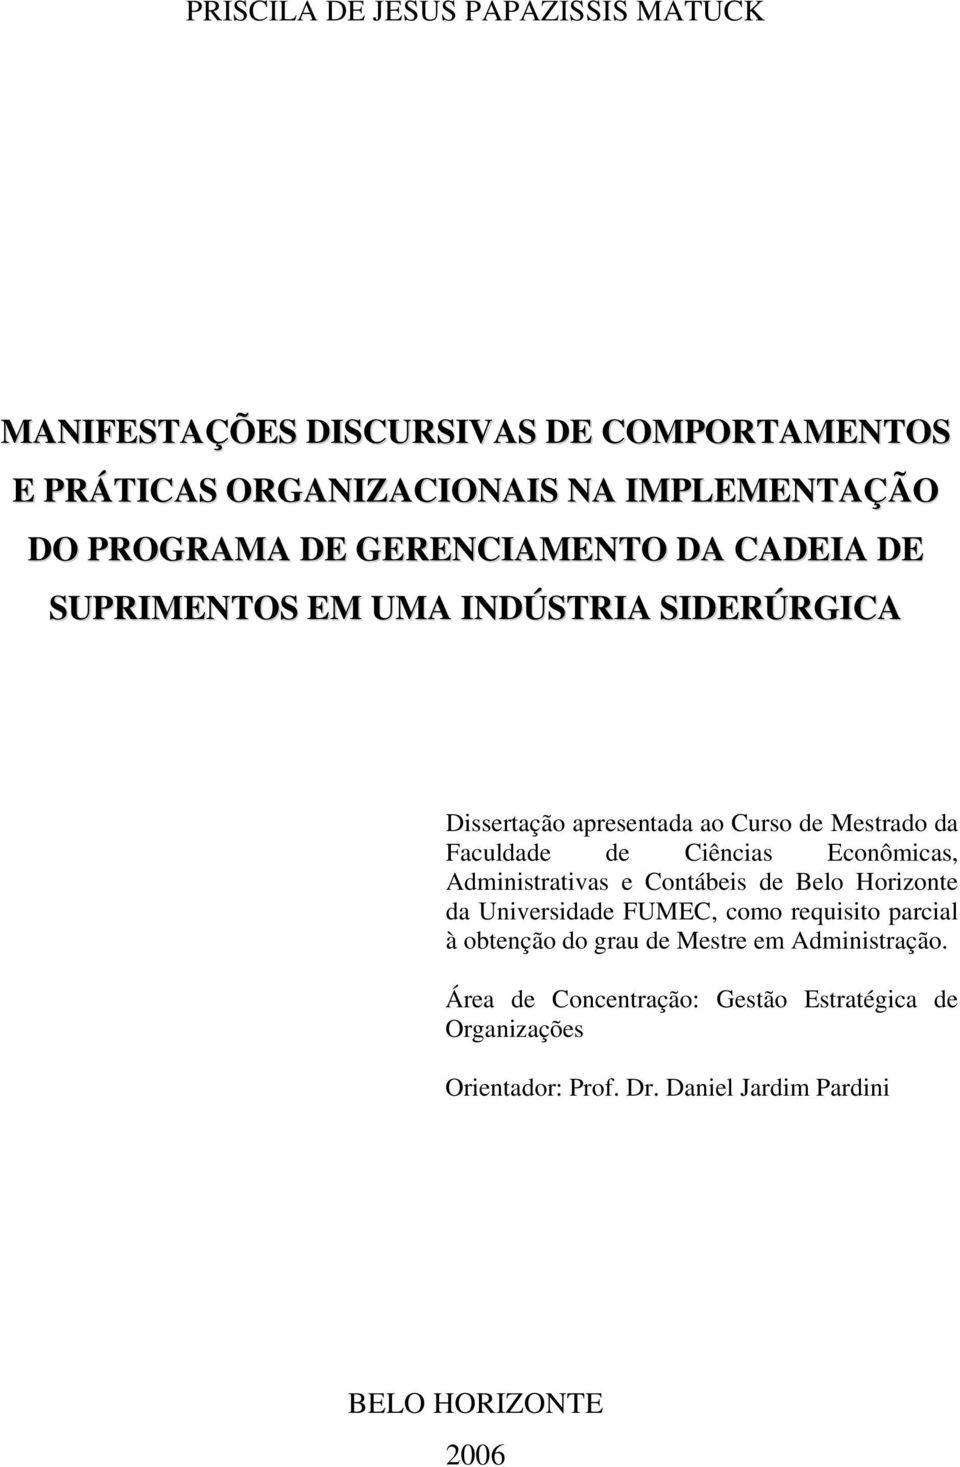 Ciências Econômicas, Administrativas e Contábeis de Belo Horizonte da Universidade FUMEC, como requisito parcial à obtenção do grau de